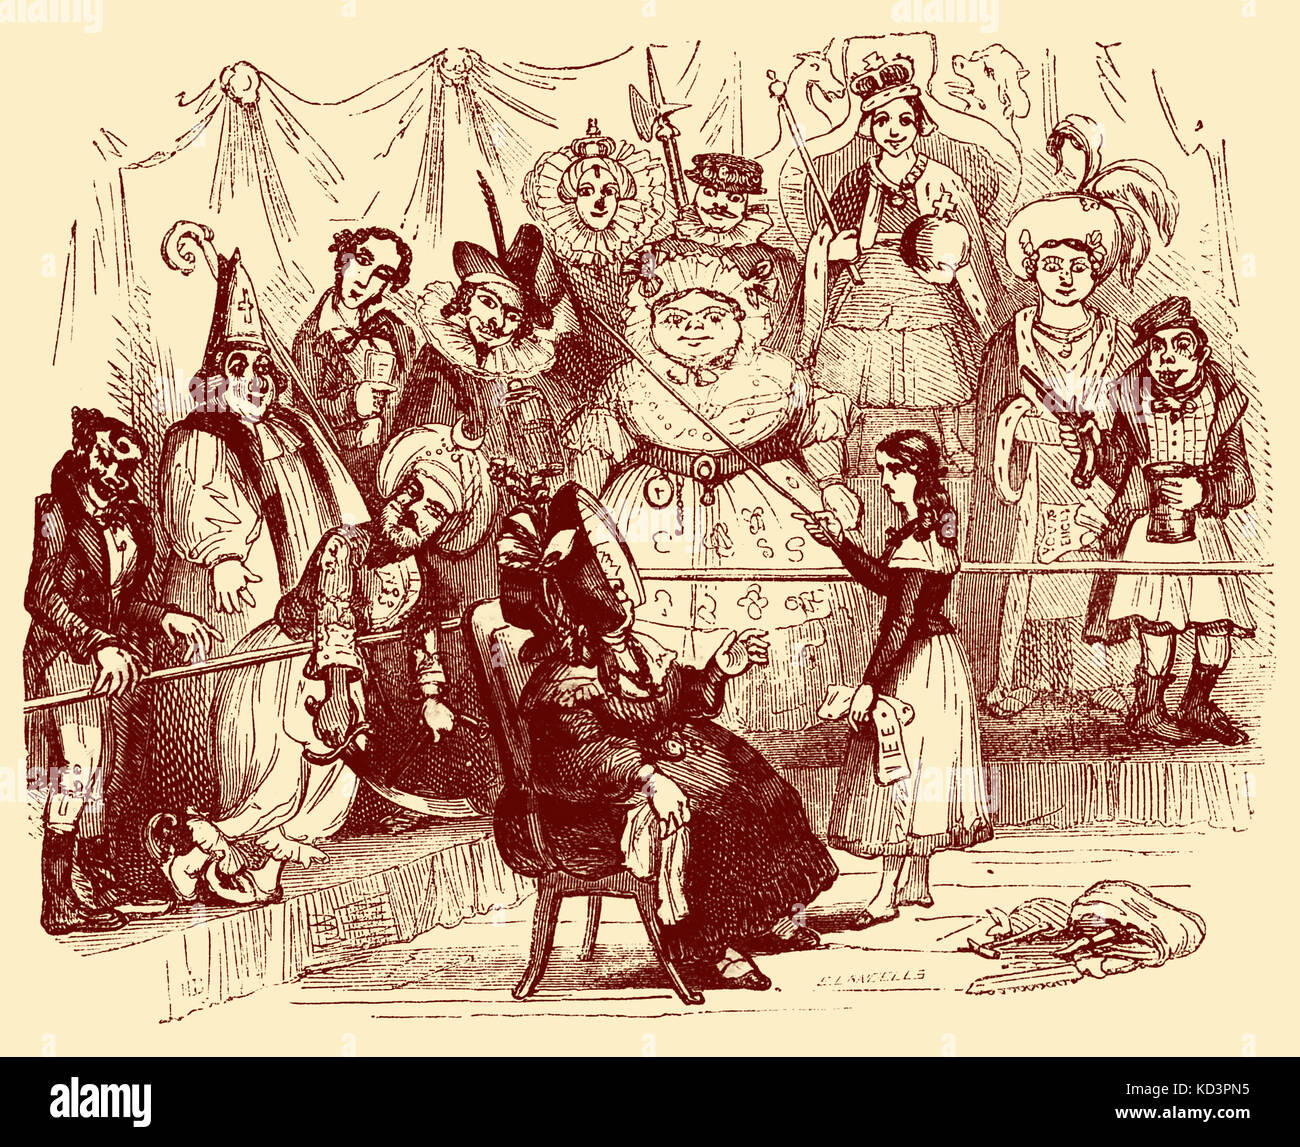 Charles Dickens 'The Old Curiosity Shop'. Pubblicato per la prima volta nel 1841. Descrizione della scena: La signora Jarley insegna nell sulle cere. Capitolo ventotto. Illustrazione di Hablot K Browne - 'Phiz' (1815-1882). CD: Romanziere inglese 7 febbraio 1812 – 9 giugno 1870 Foto Stock